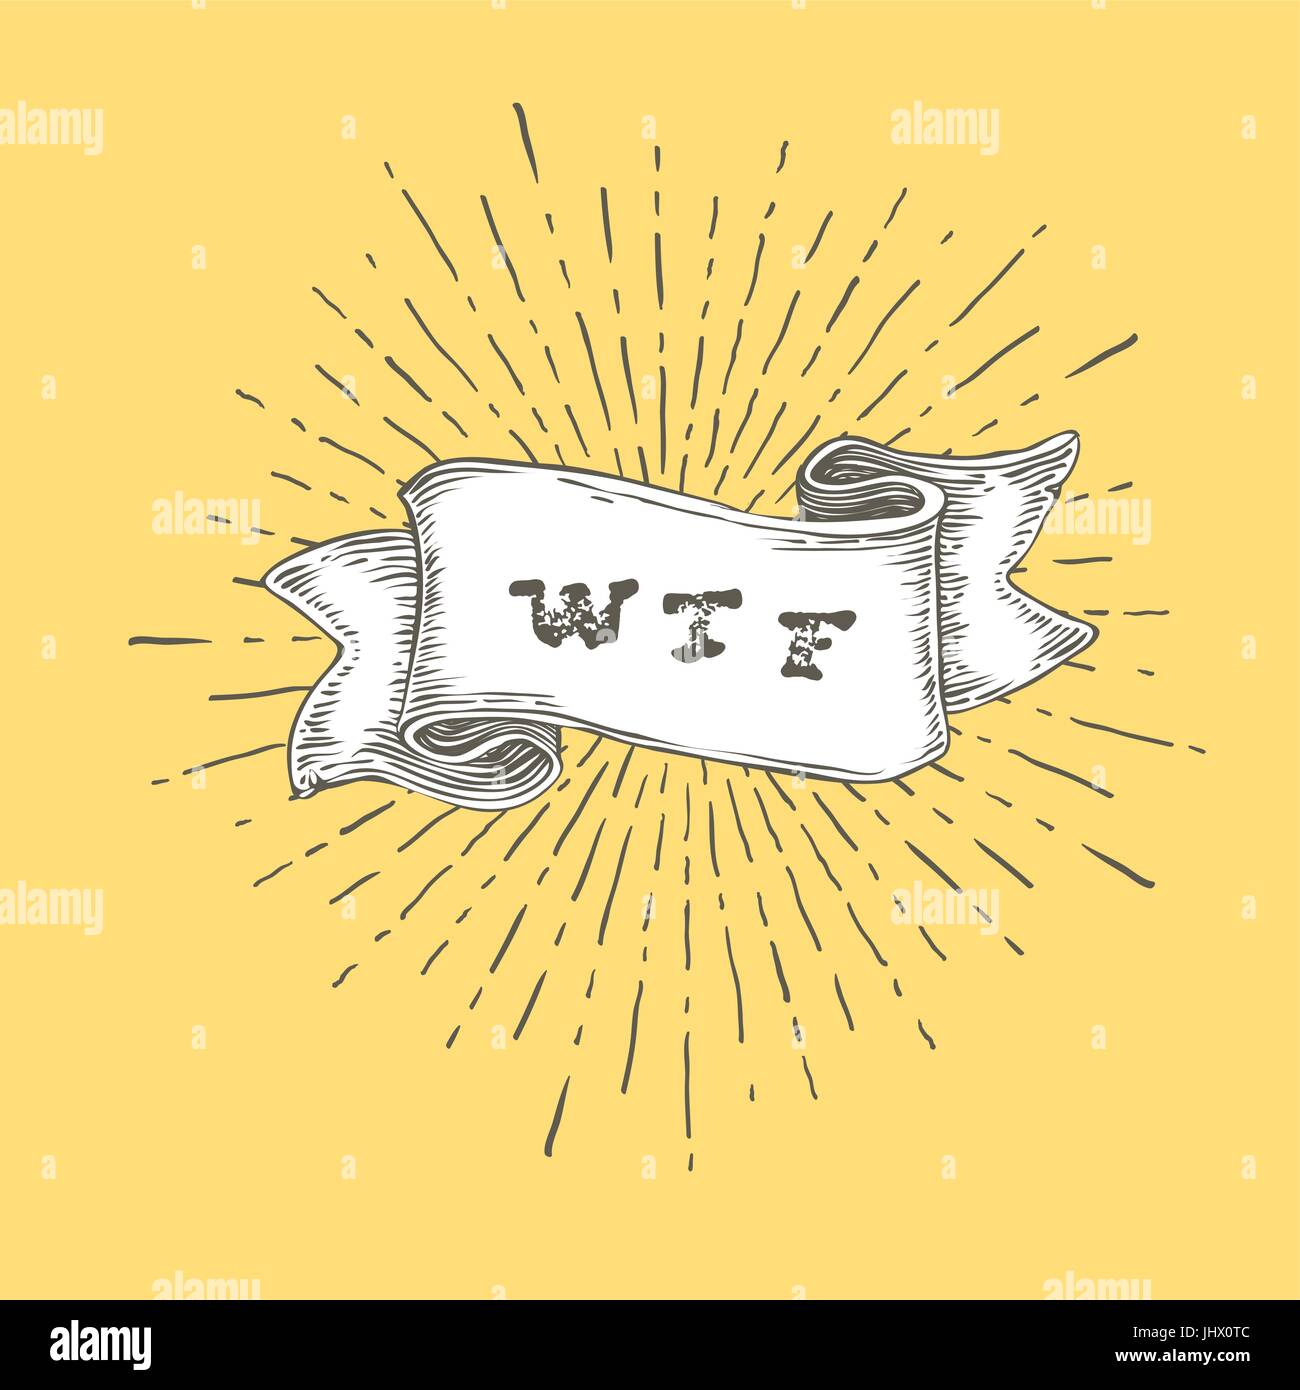 WTF. Delineare wtf icona nella mano vintage nastro stirato. Graphic art design su sfondo giallo. Concetto di esclamare con conversazione negativa o aggressi Illustrazione Vettoriale